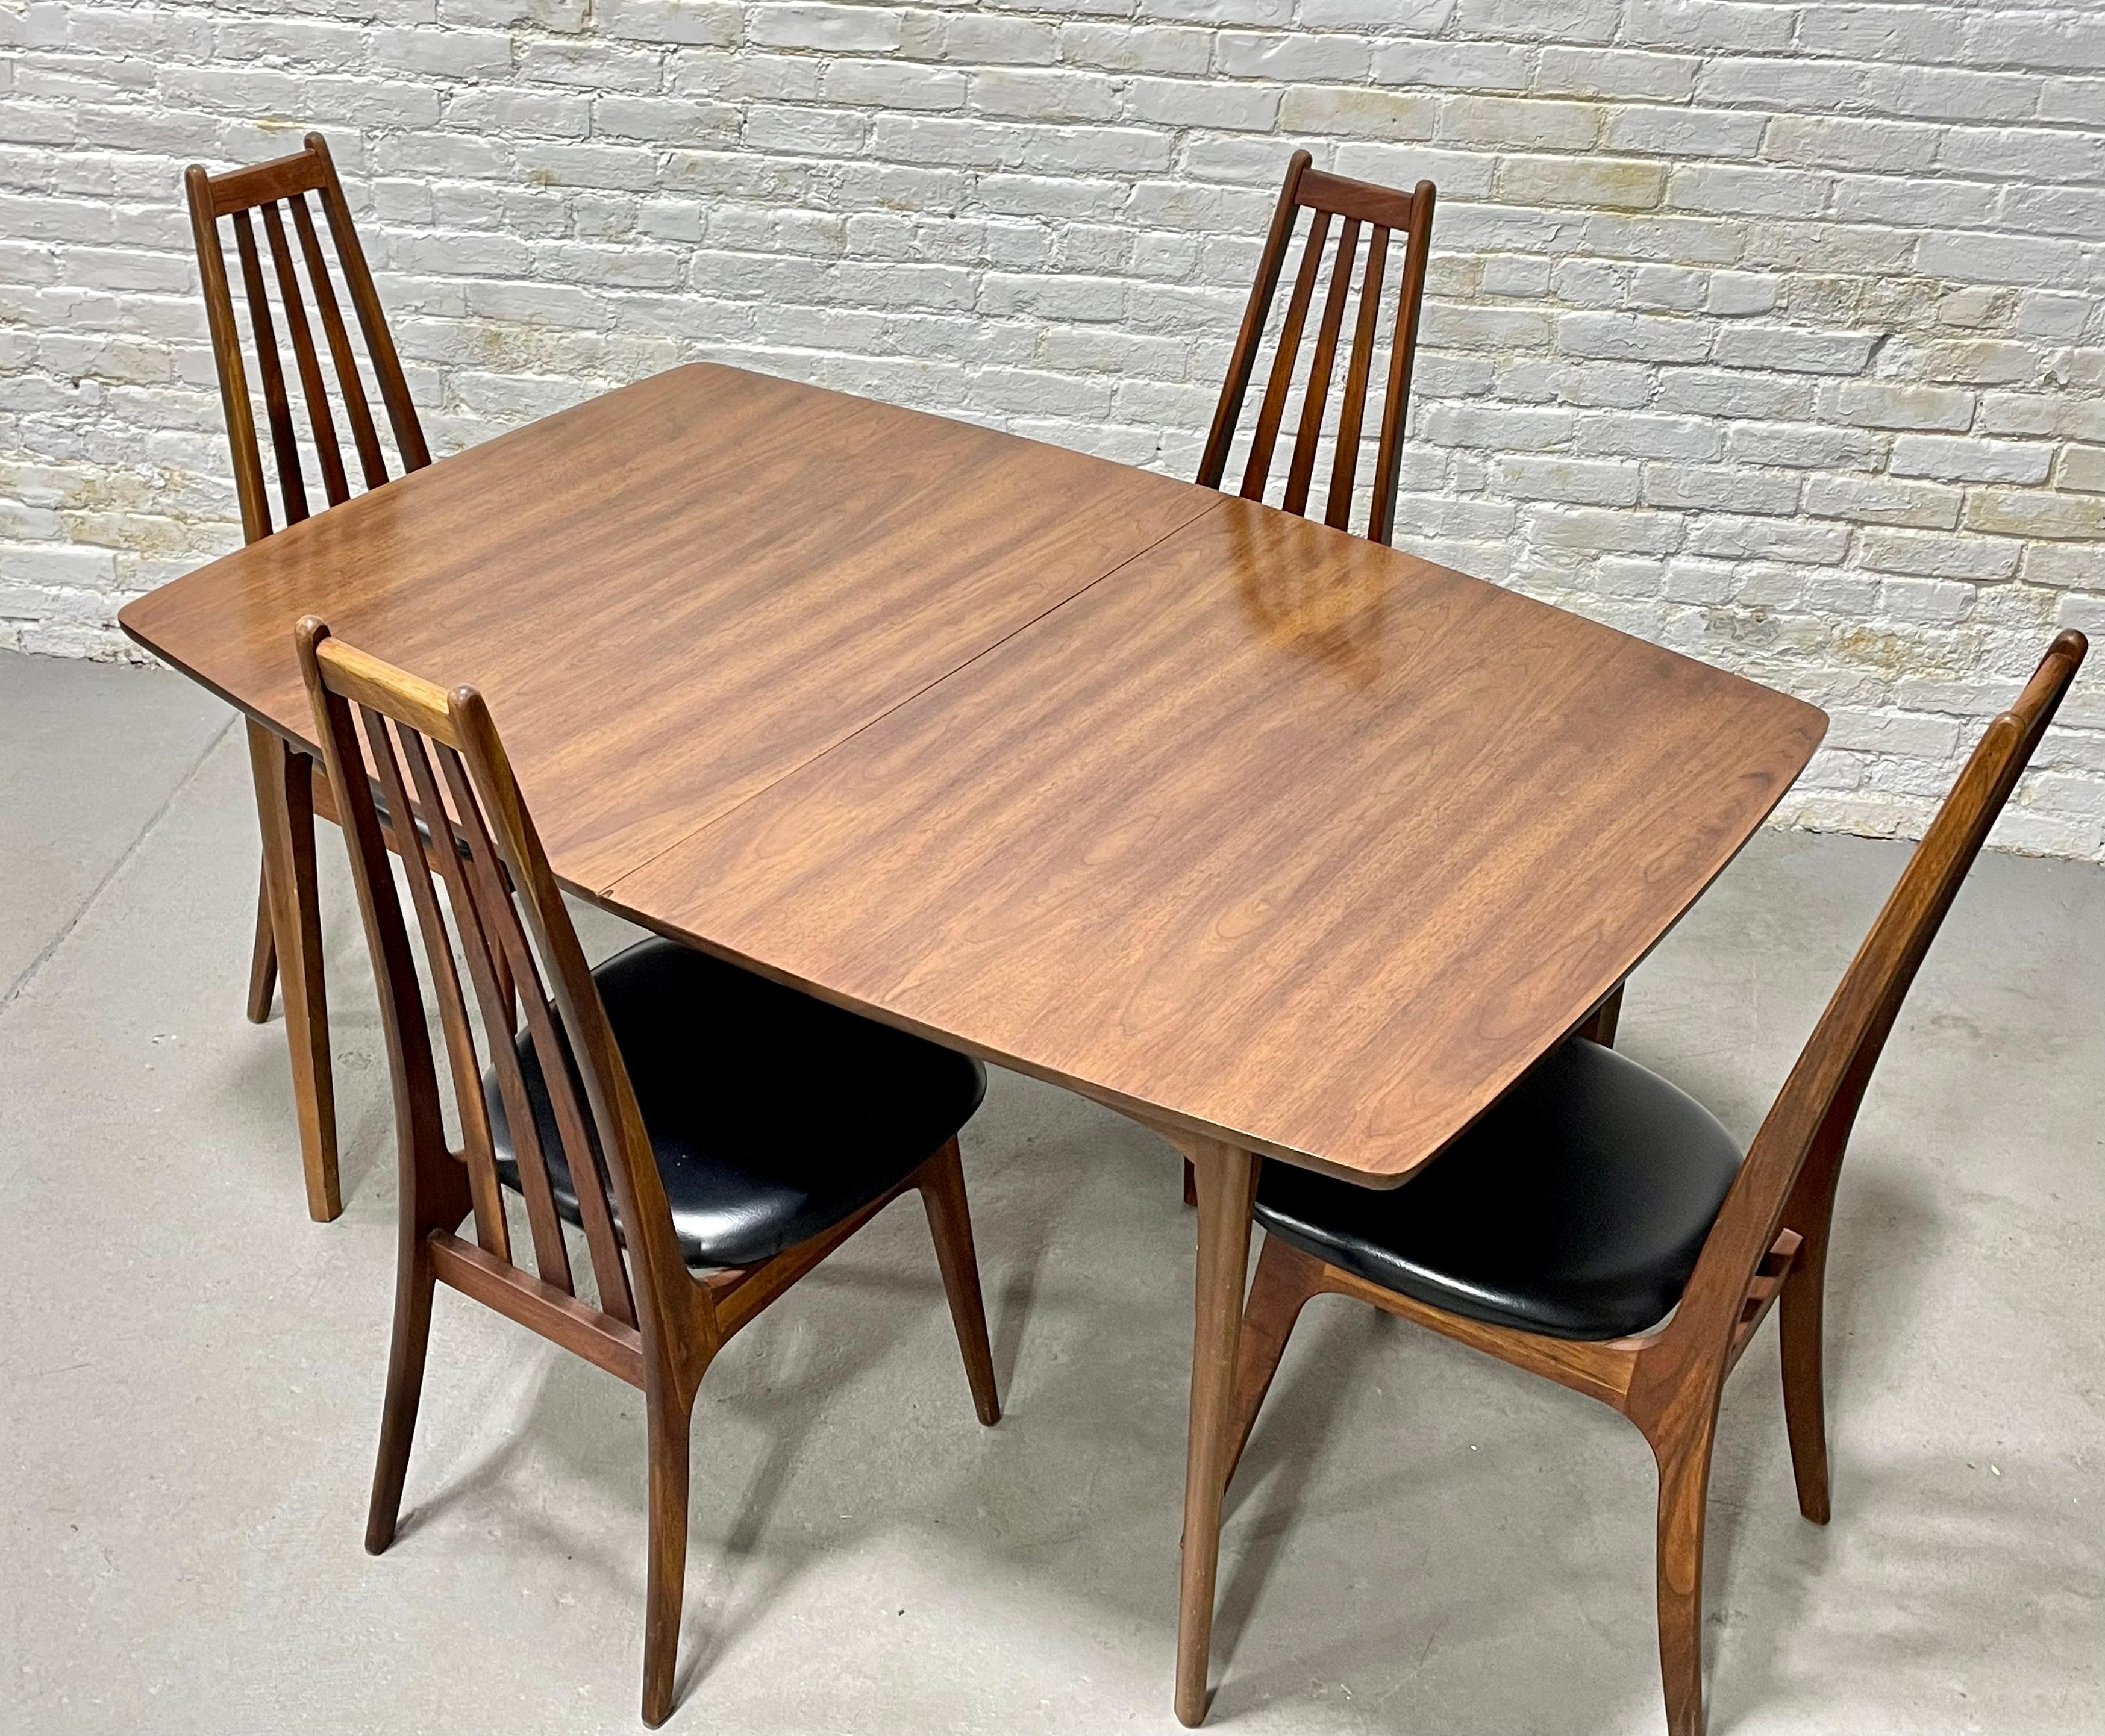 TABLE À DINER EN NOYER, moderne du milieu du siècle, c. 1960. Une taille idéale pour accueillir confortablement 6 personnes. La table elle-même est solidement construite en bois de noyer et robuste pour des décennies d'utilisation. La table